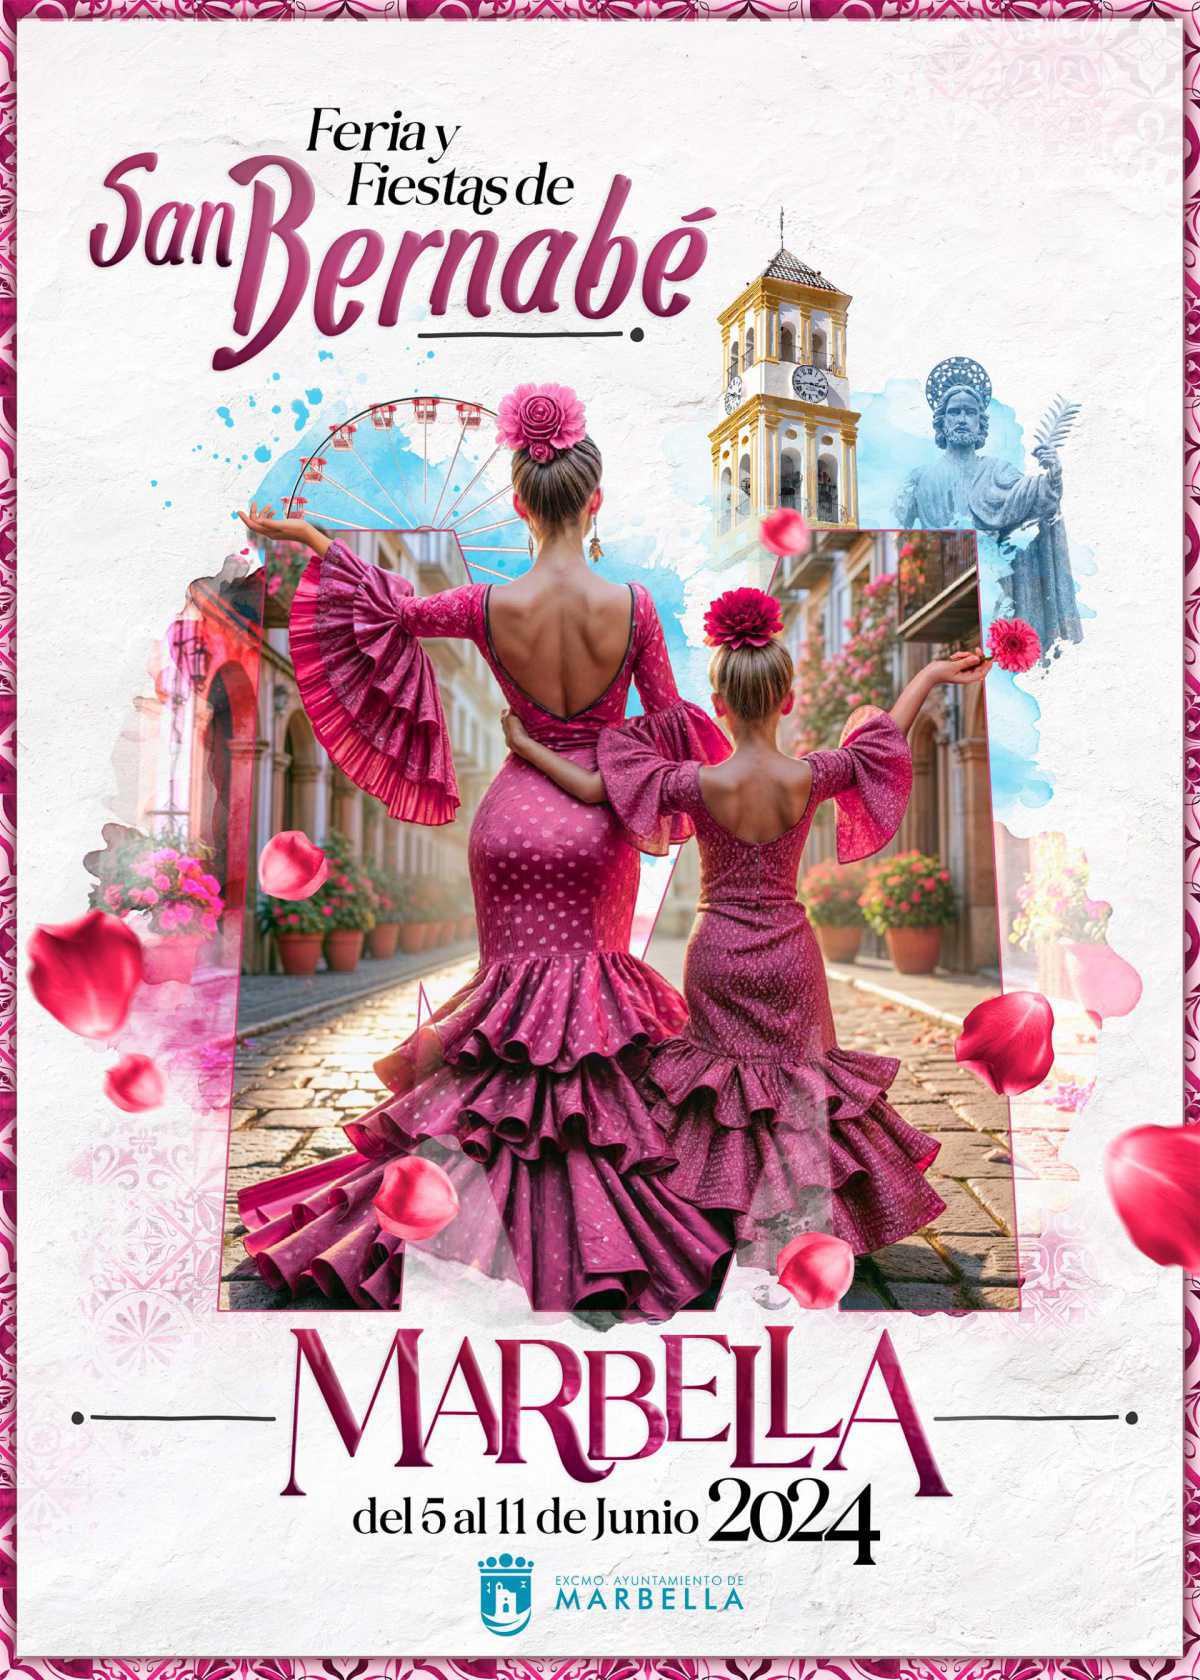 L'affiche de la Feria de San Bernabé vient d'être dévoilée 